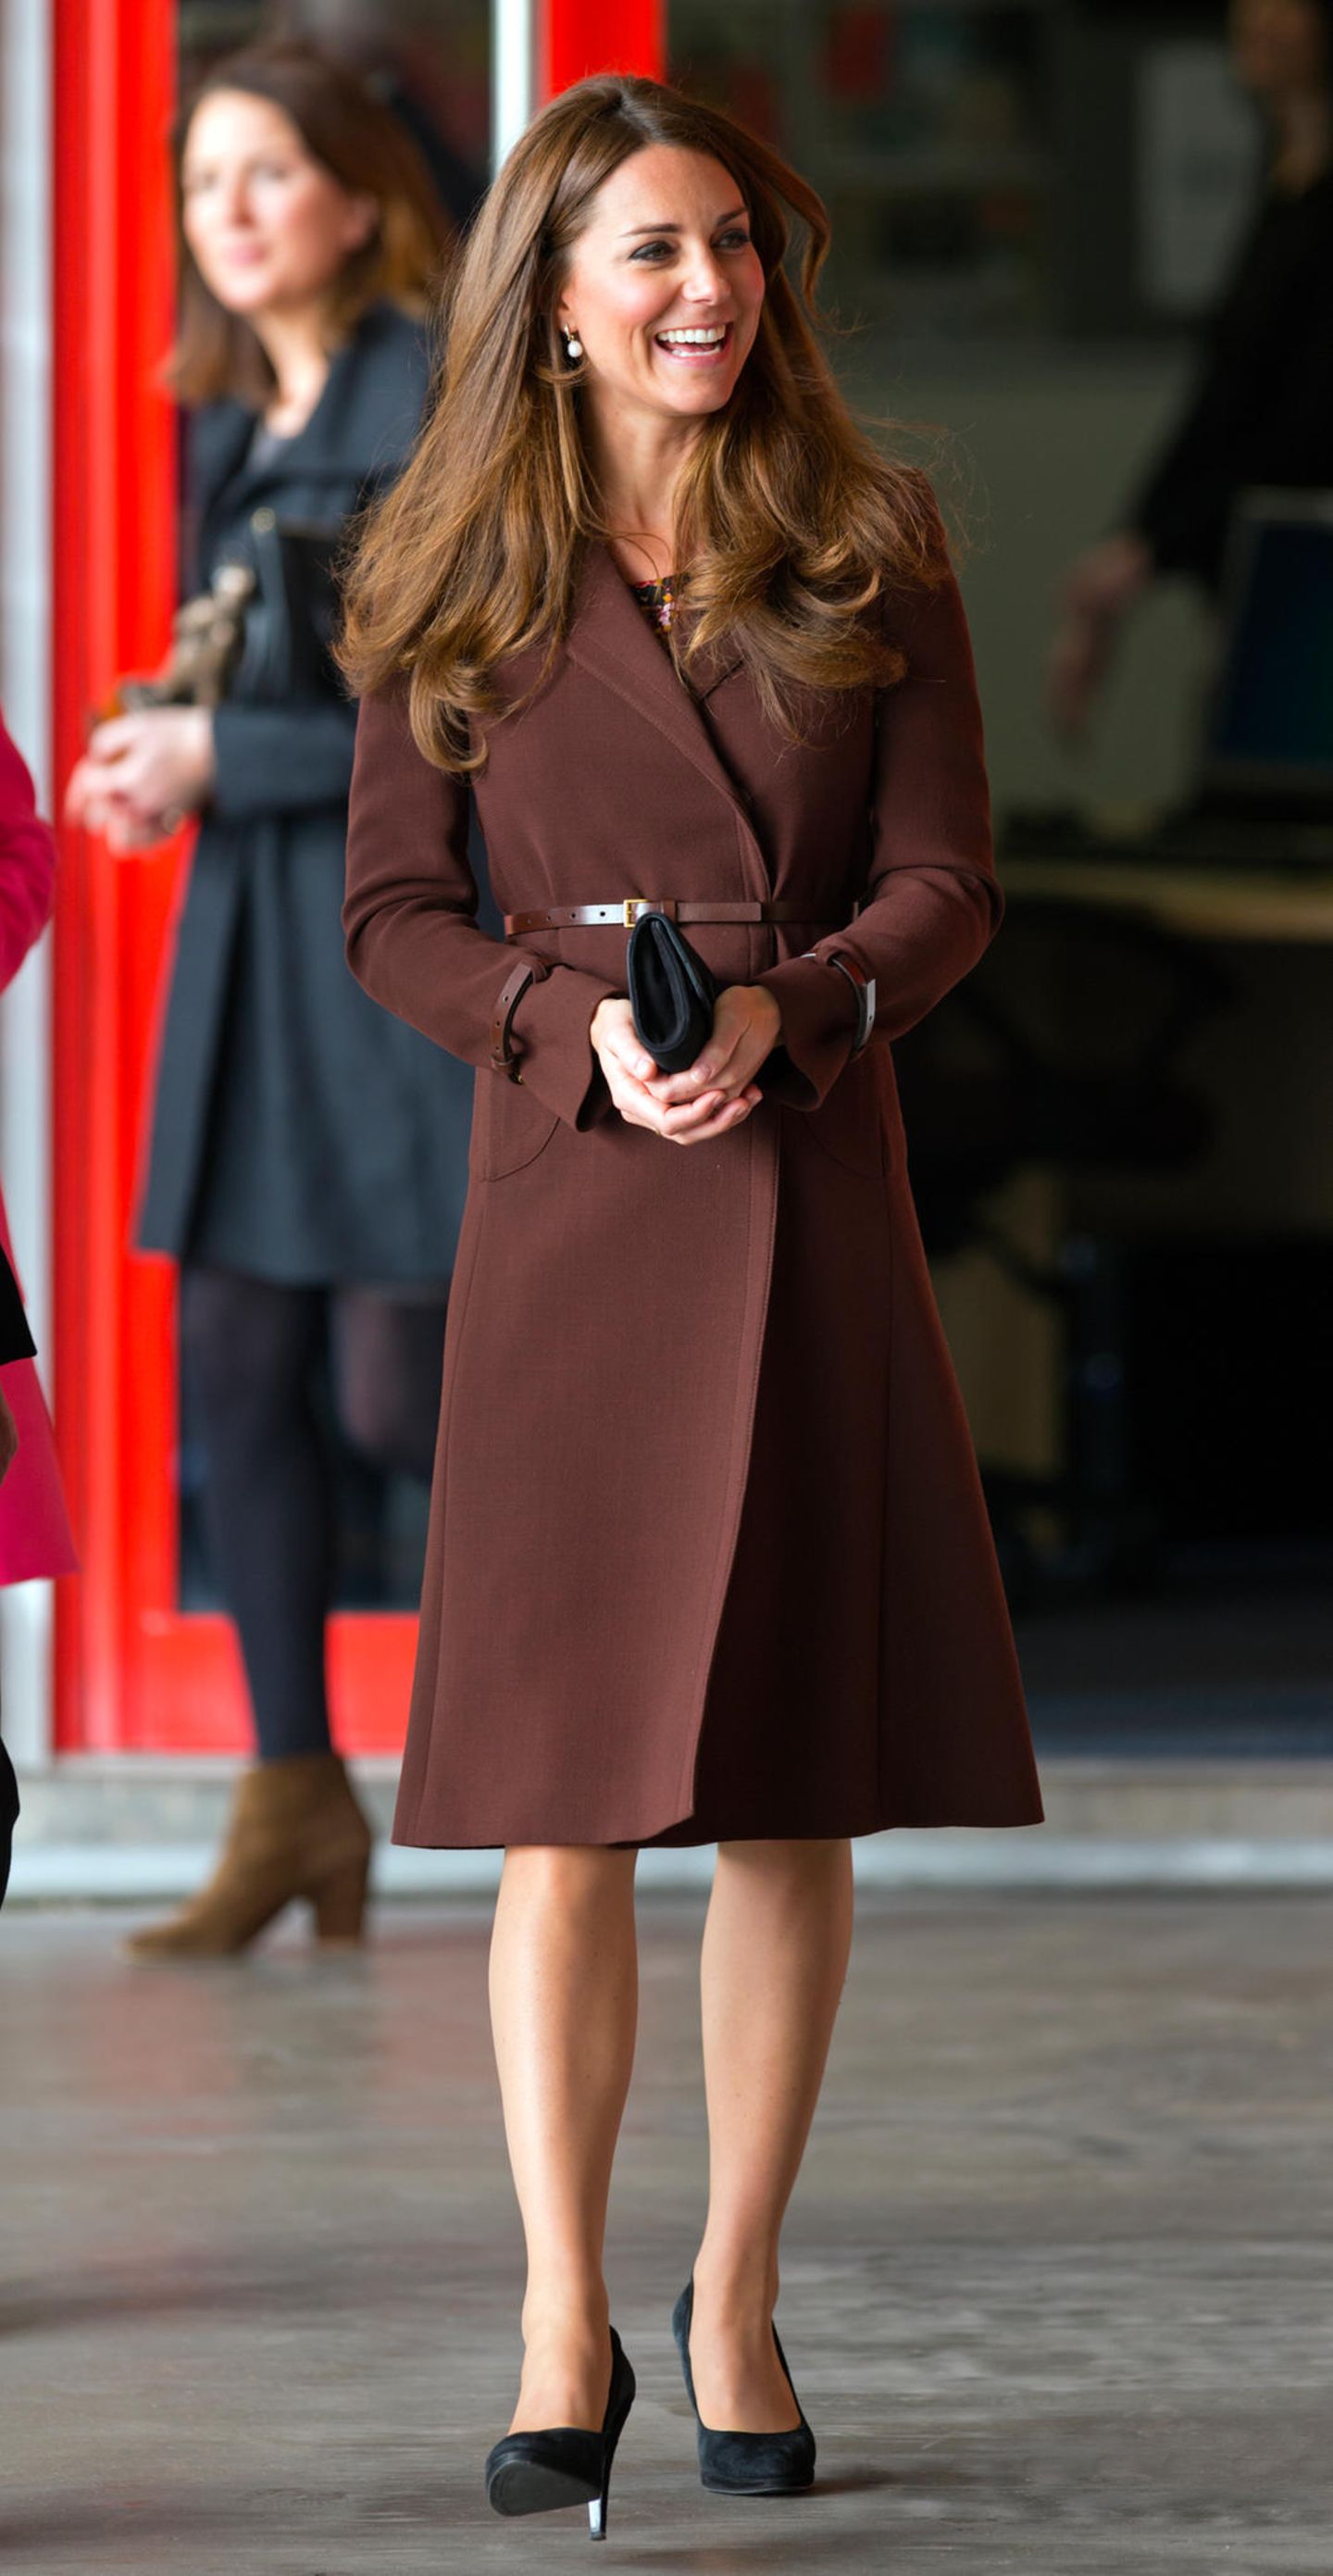 Von dezent bis knallig: So kennt man es von ihr! Kate ist mal wieder ganz elegant und klassisch unterwegs. Der schokoladenbraune Mantel betont ihre schlanke Silhouette. Und auch die Nägel passen zum stilvollen Auftreten der Duchess.